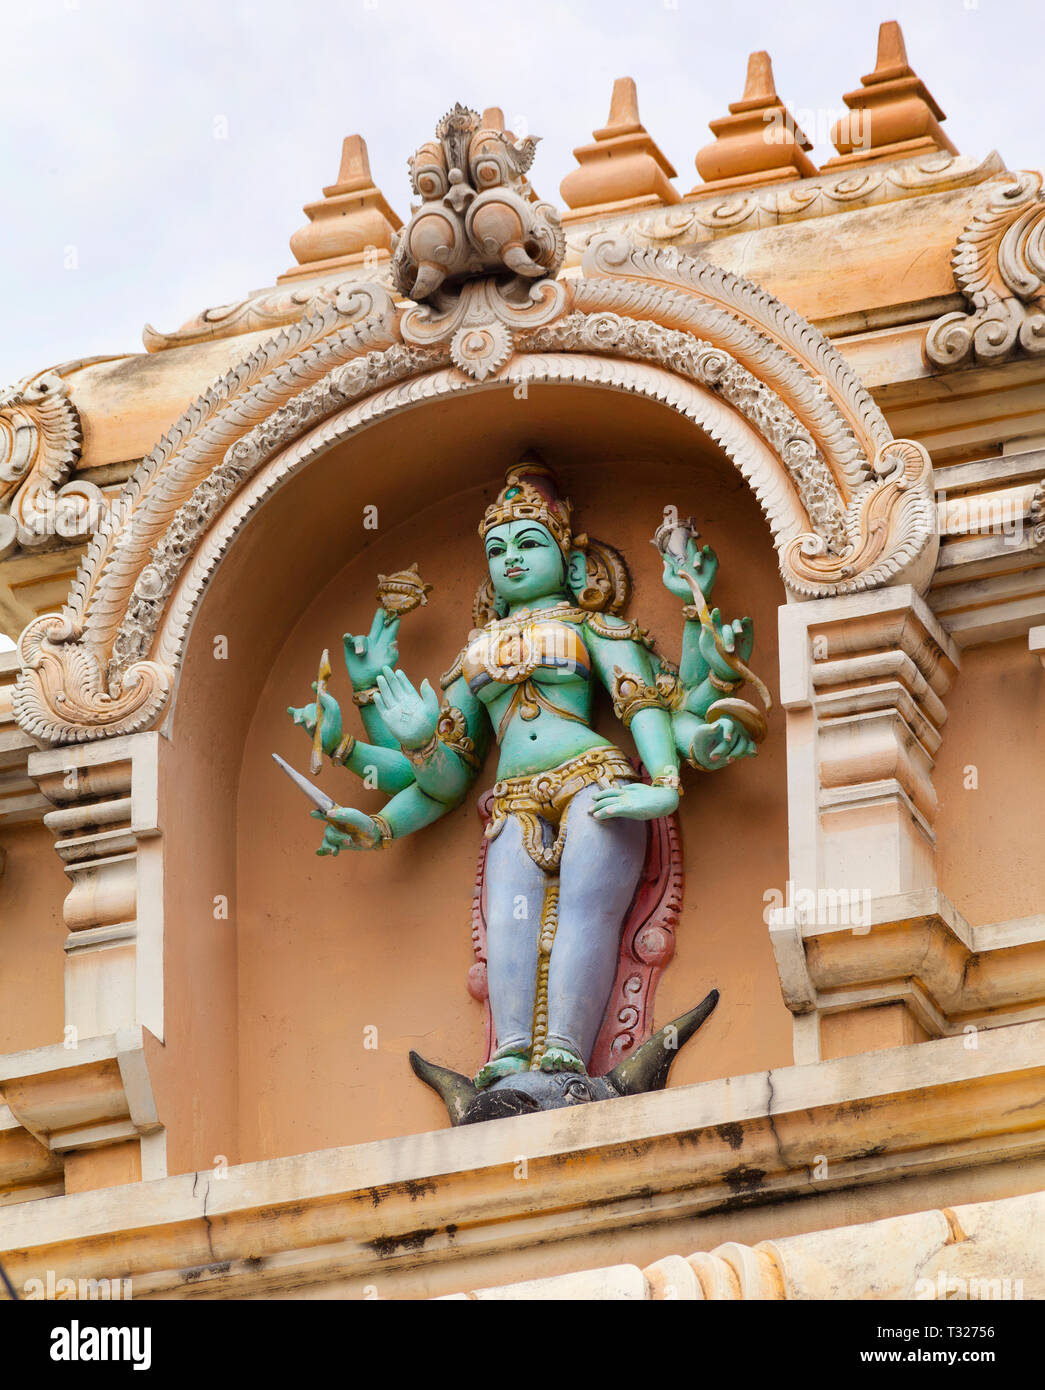 Il Tempio di Sri Mariamman Dhevasthanam, presentando gli ornati di 'raja Gopuram' torre in stile del Sud templi indiani. Kuala Lumpur, Malesia. Foto Stock